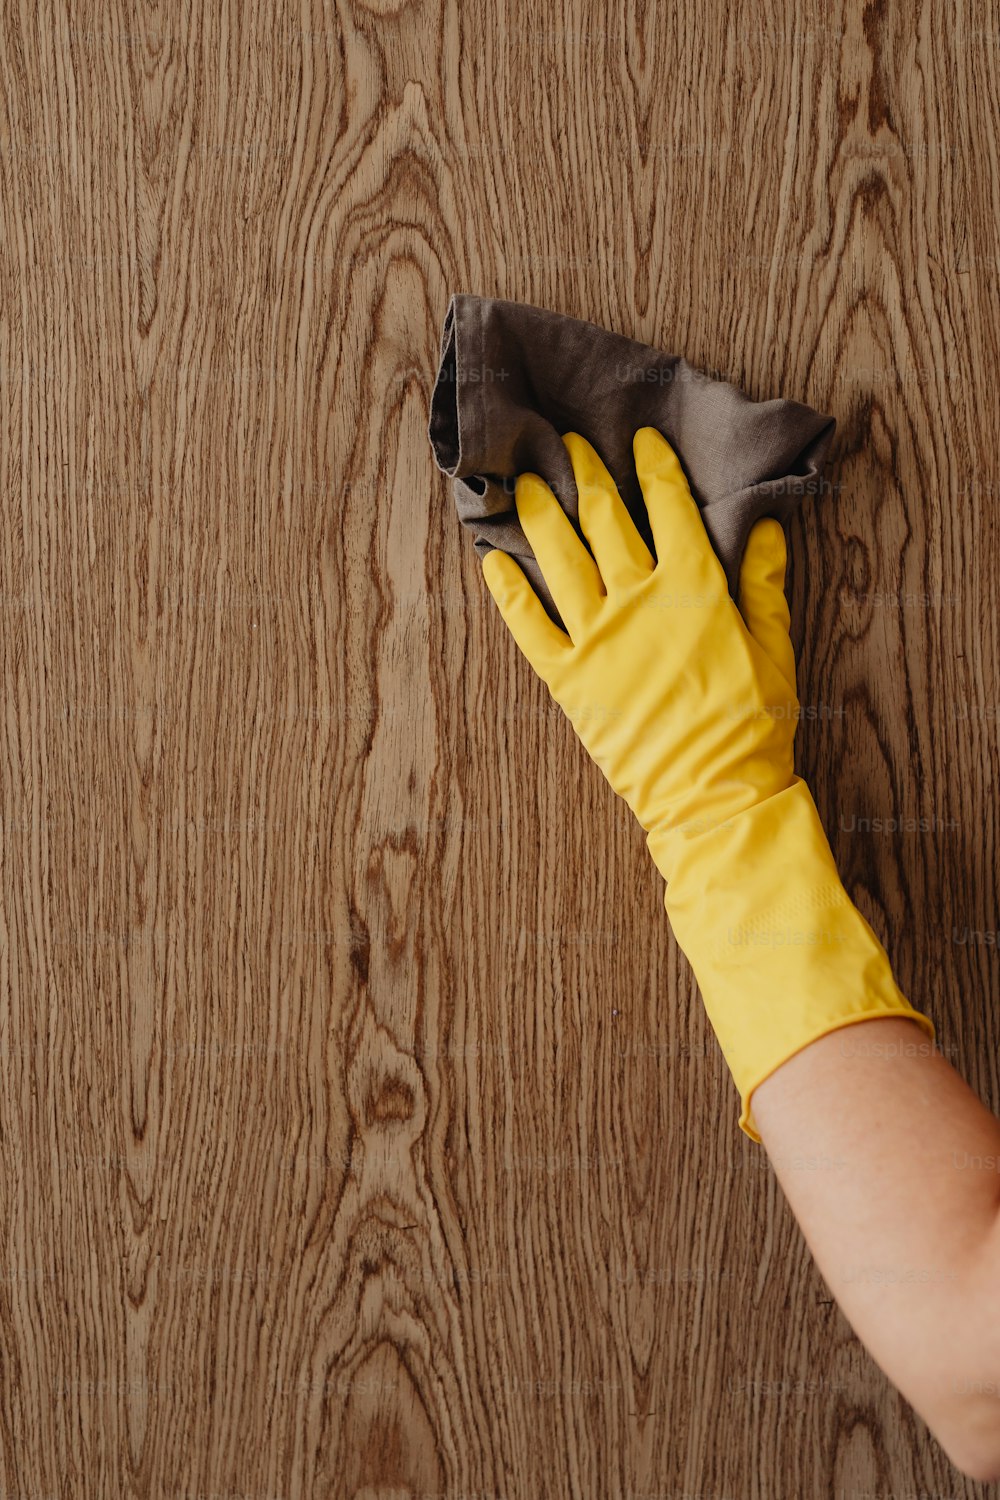 Una persona con guantes amarillos limpiando una superficie de madera